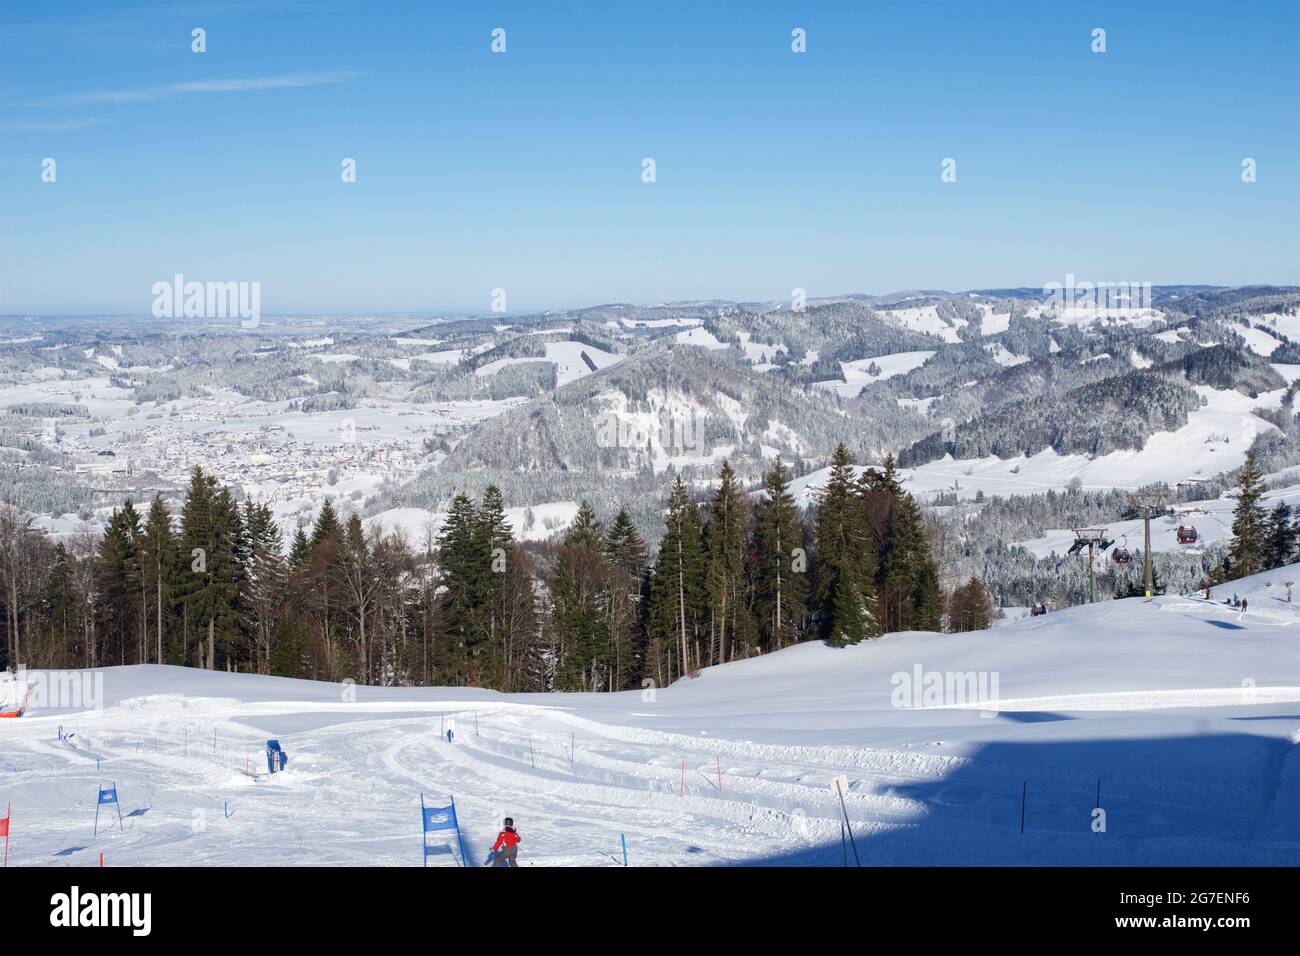 OBERSTAUFEN, GERMANIA - 29 DEC, 2017: Splendida vista sulla stazione invernale innevata di Oberstaufen nelle Alpi bavaresi con piste da sci e sciatori nel Foto Stock